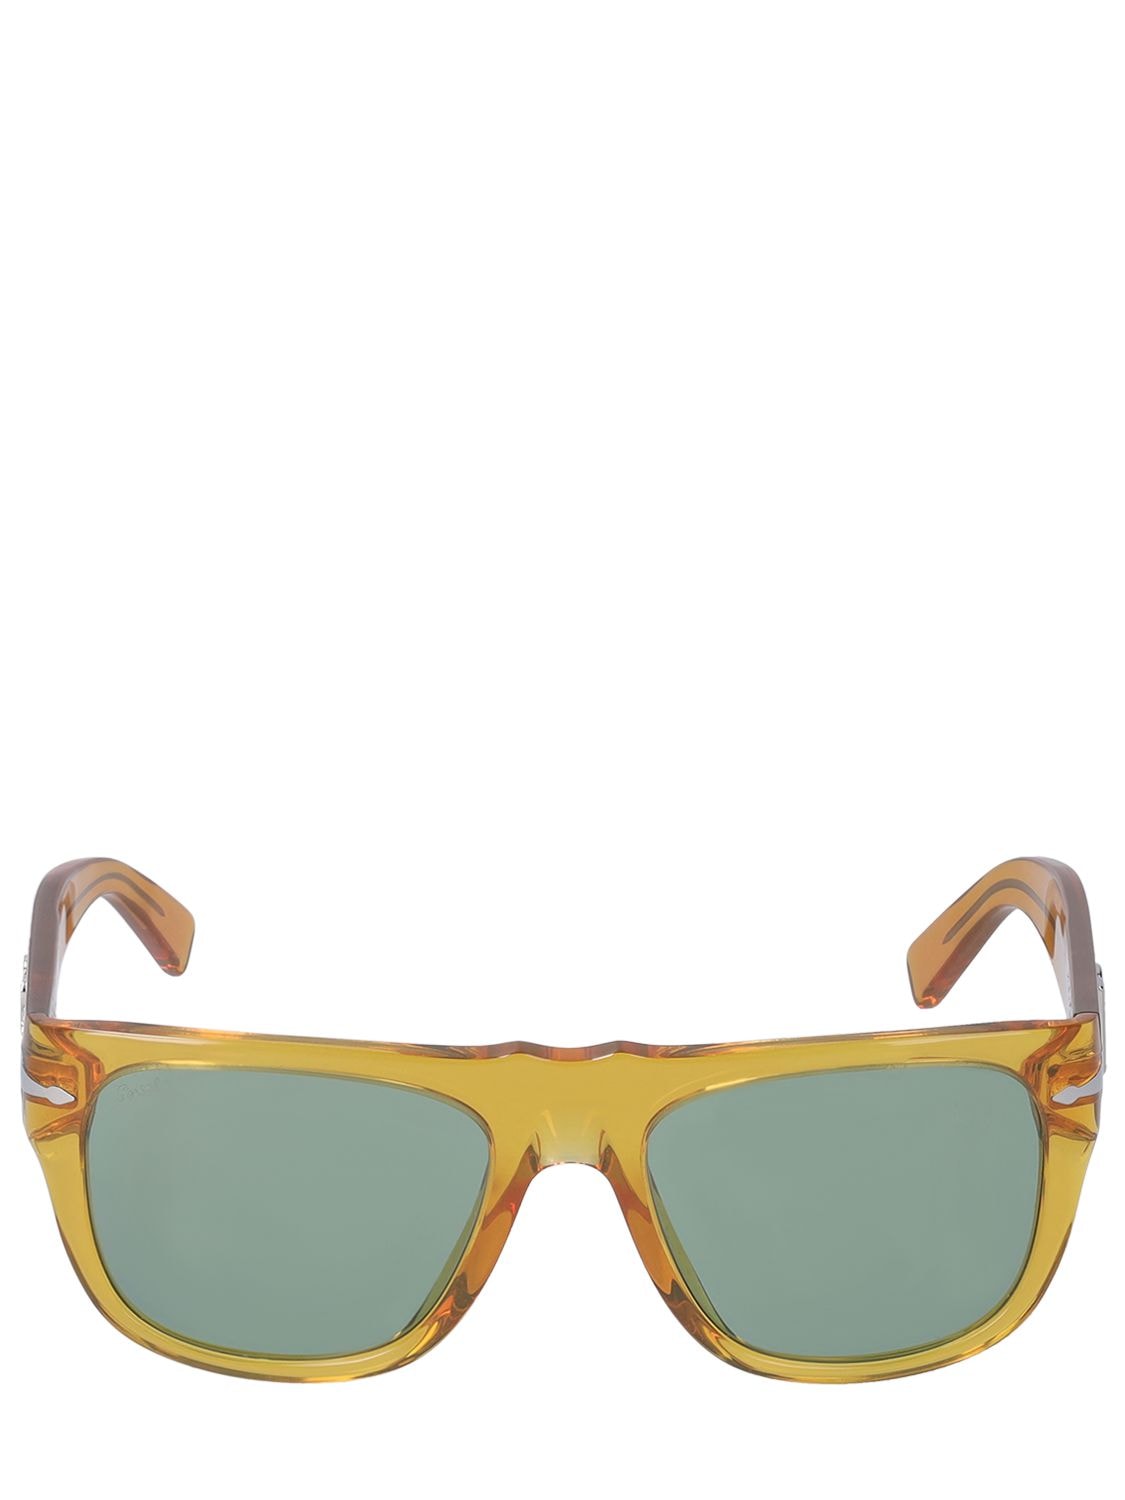 Dolce & Gabbana D&g X Persol Squared Acetate Sunglasses In Orange,green